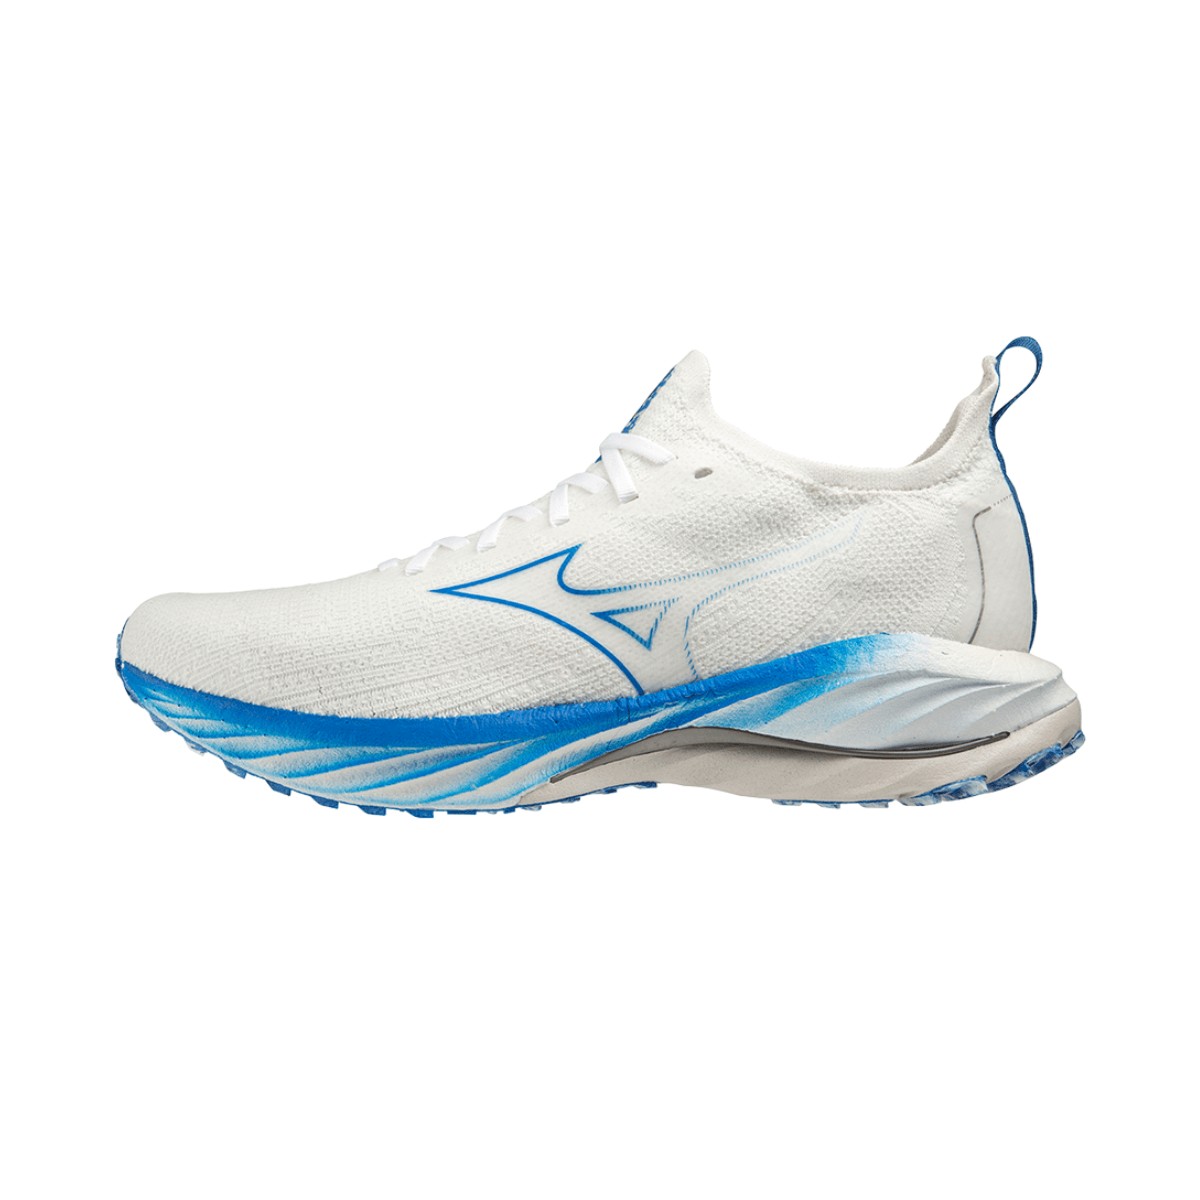 Sneakers Mizuno Wave Neo Wind White Blue AW22, Size 41 - EUR